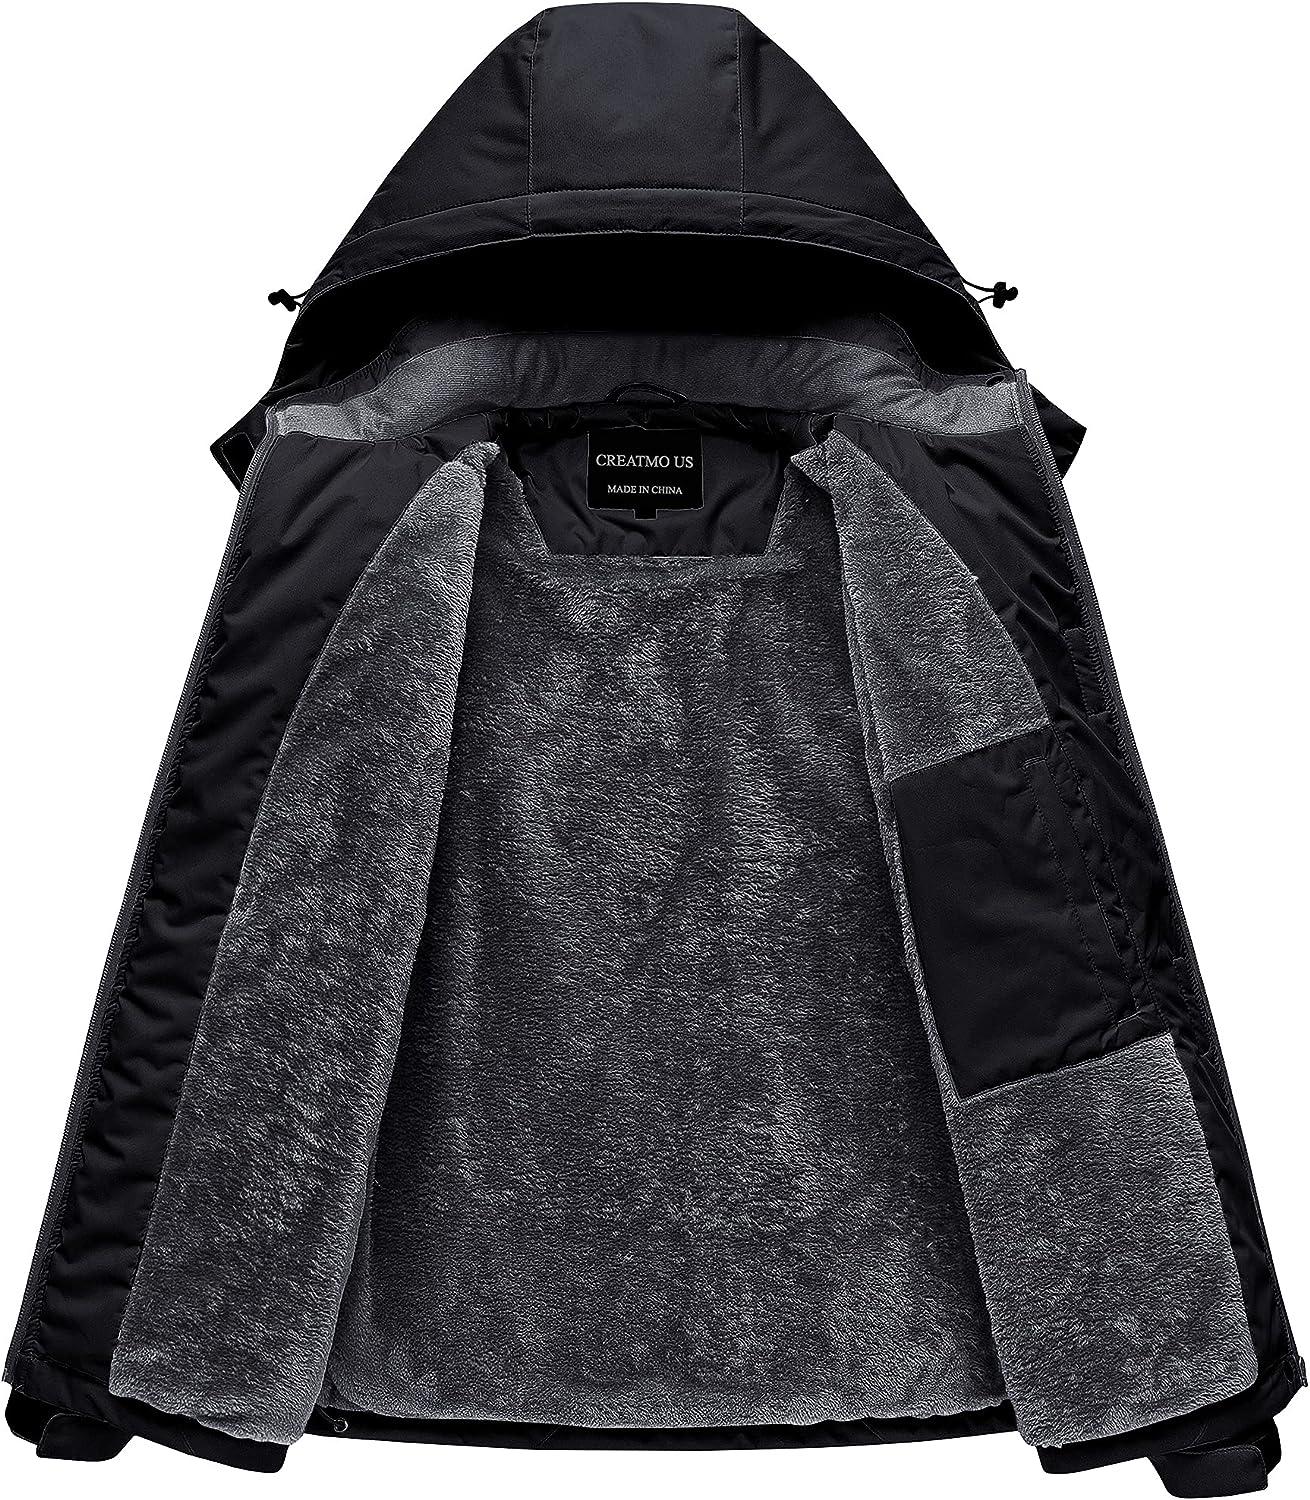 CREATMO US Women's Winter Hooded Coat Waterproof Warm Long Puffer